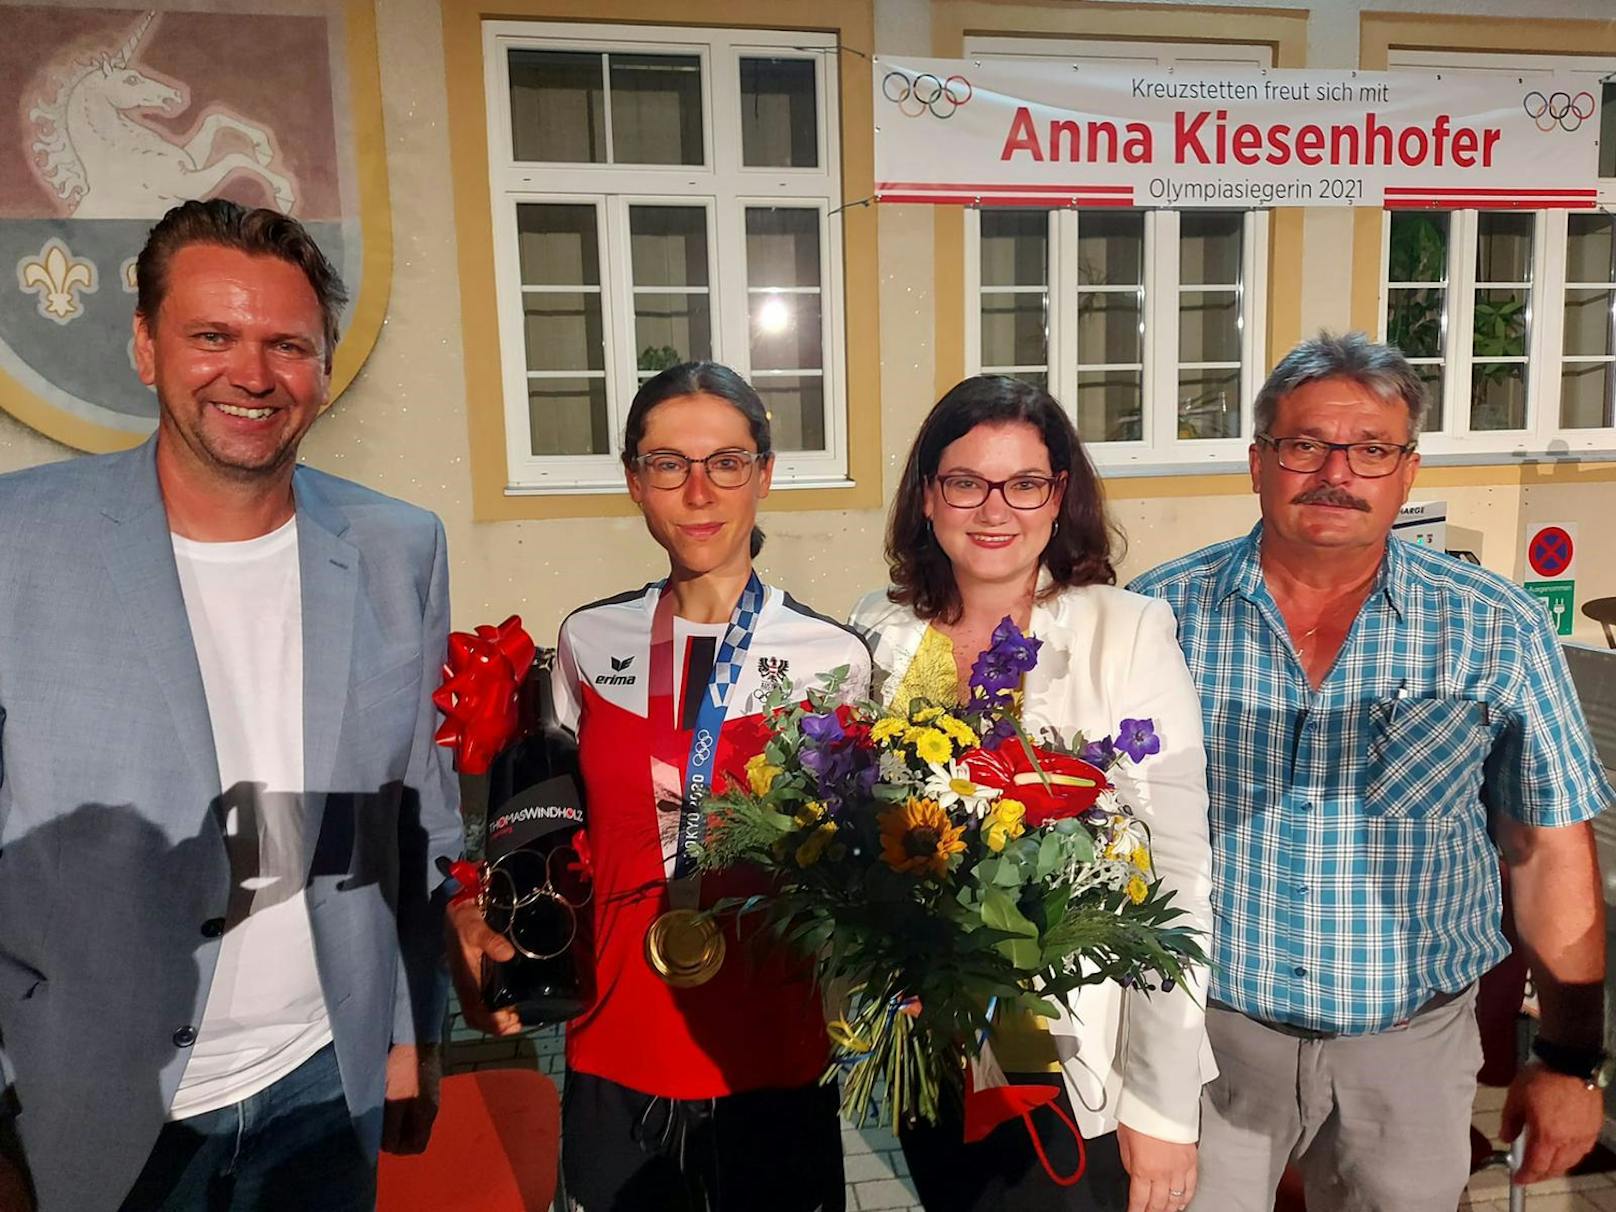 Olympiasiegerin Anna Kiesenhofer beim Empfang in Niederkreuzstetten.